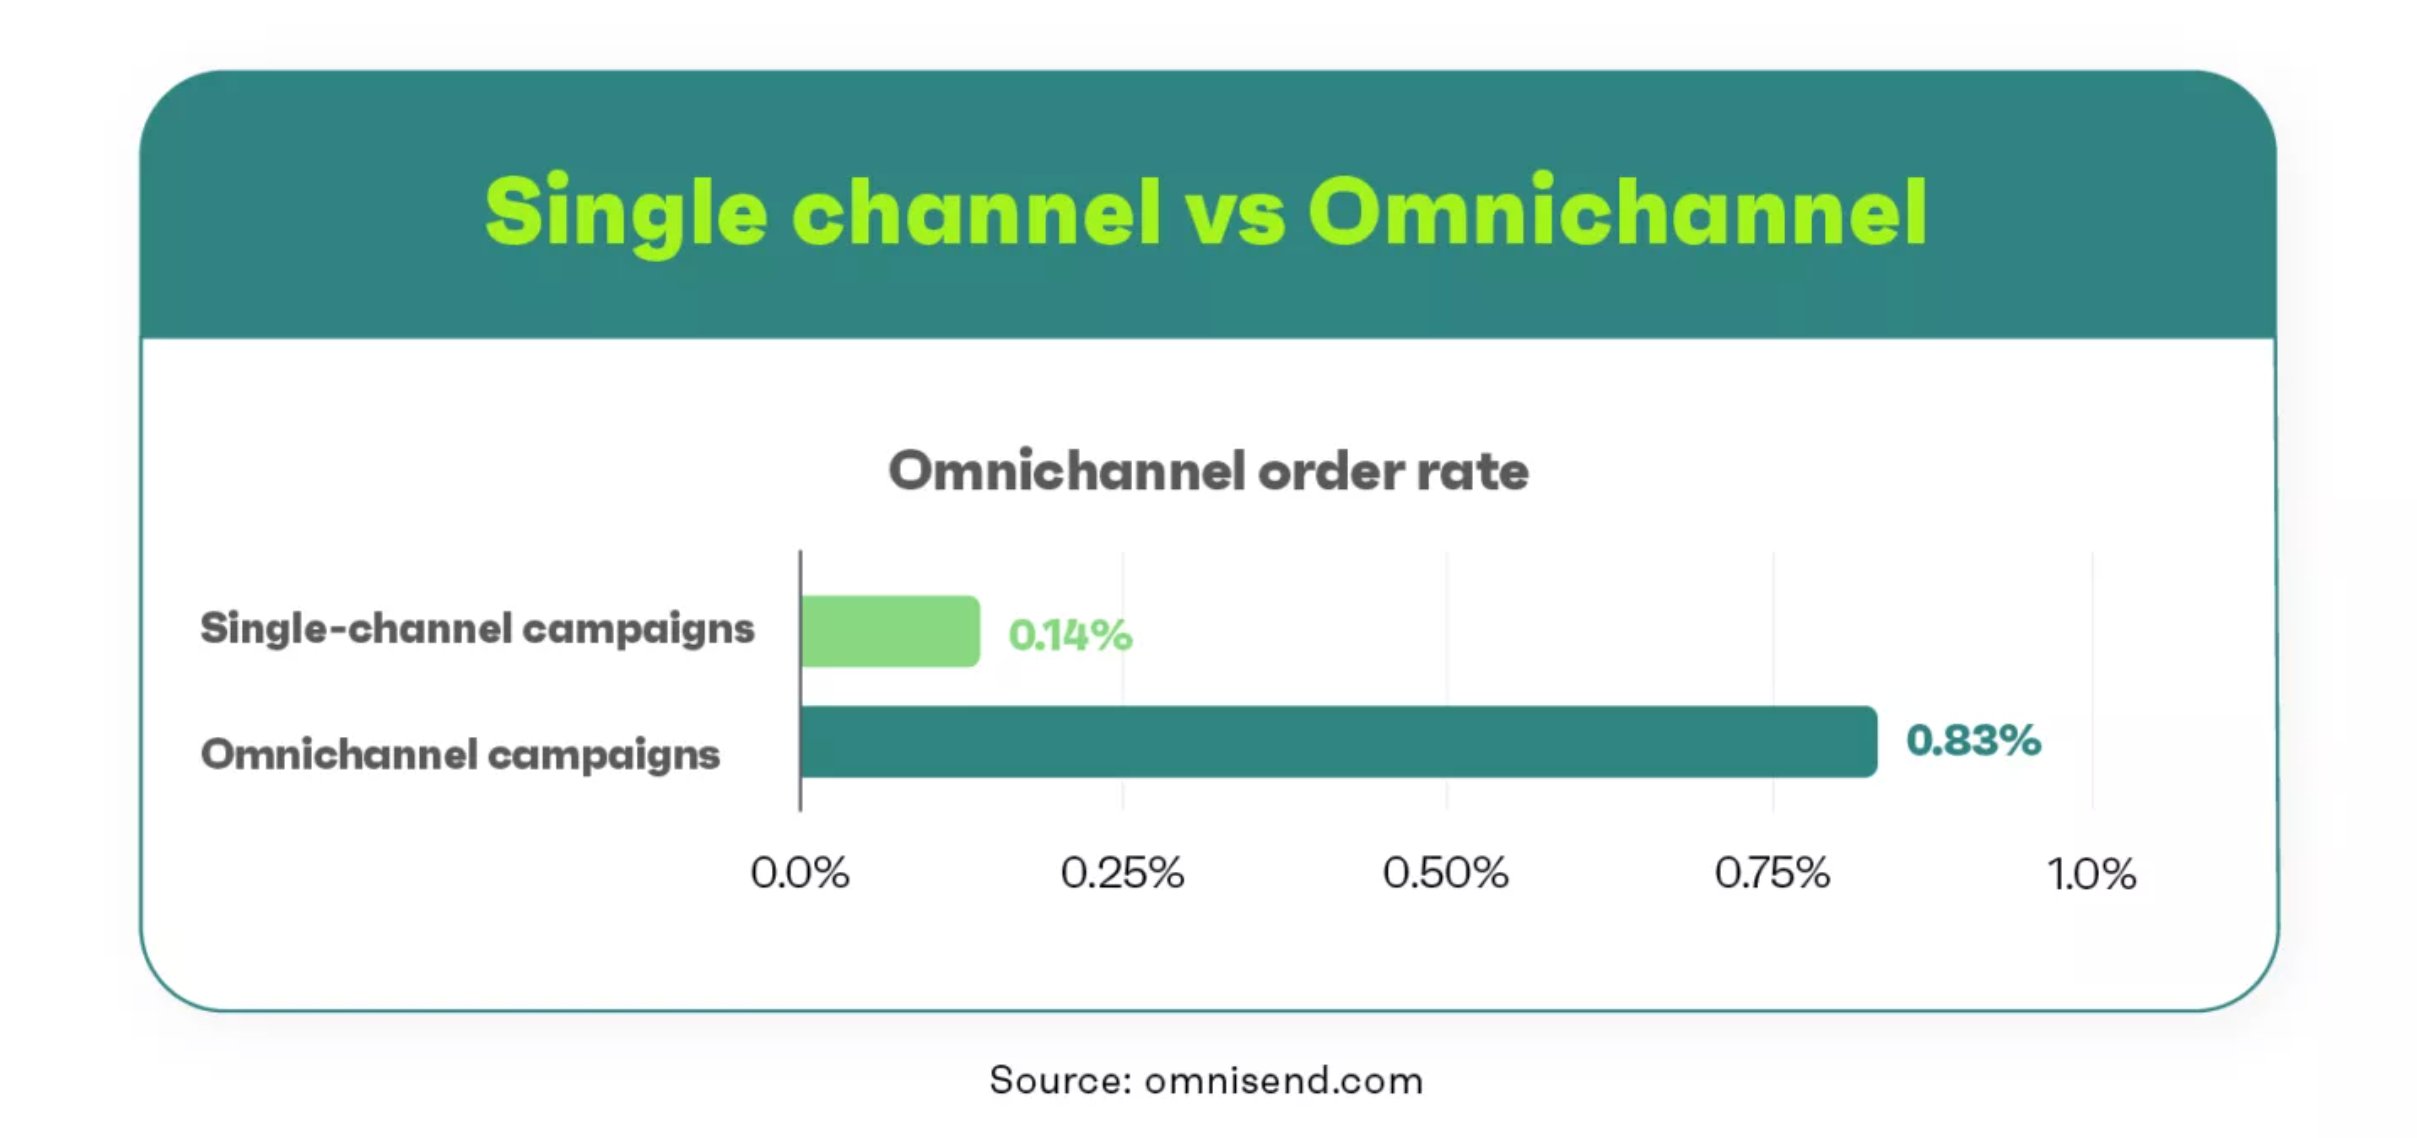 Single channel vs Omnichannel